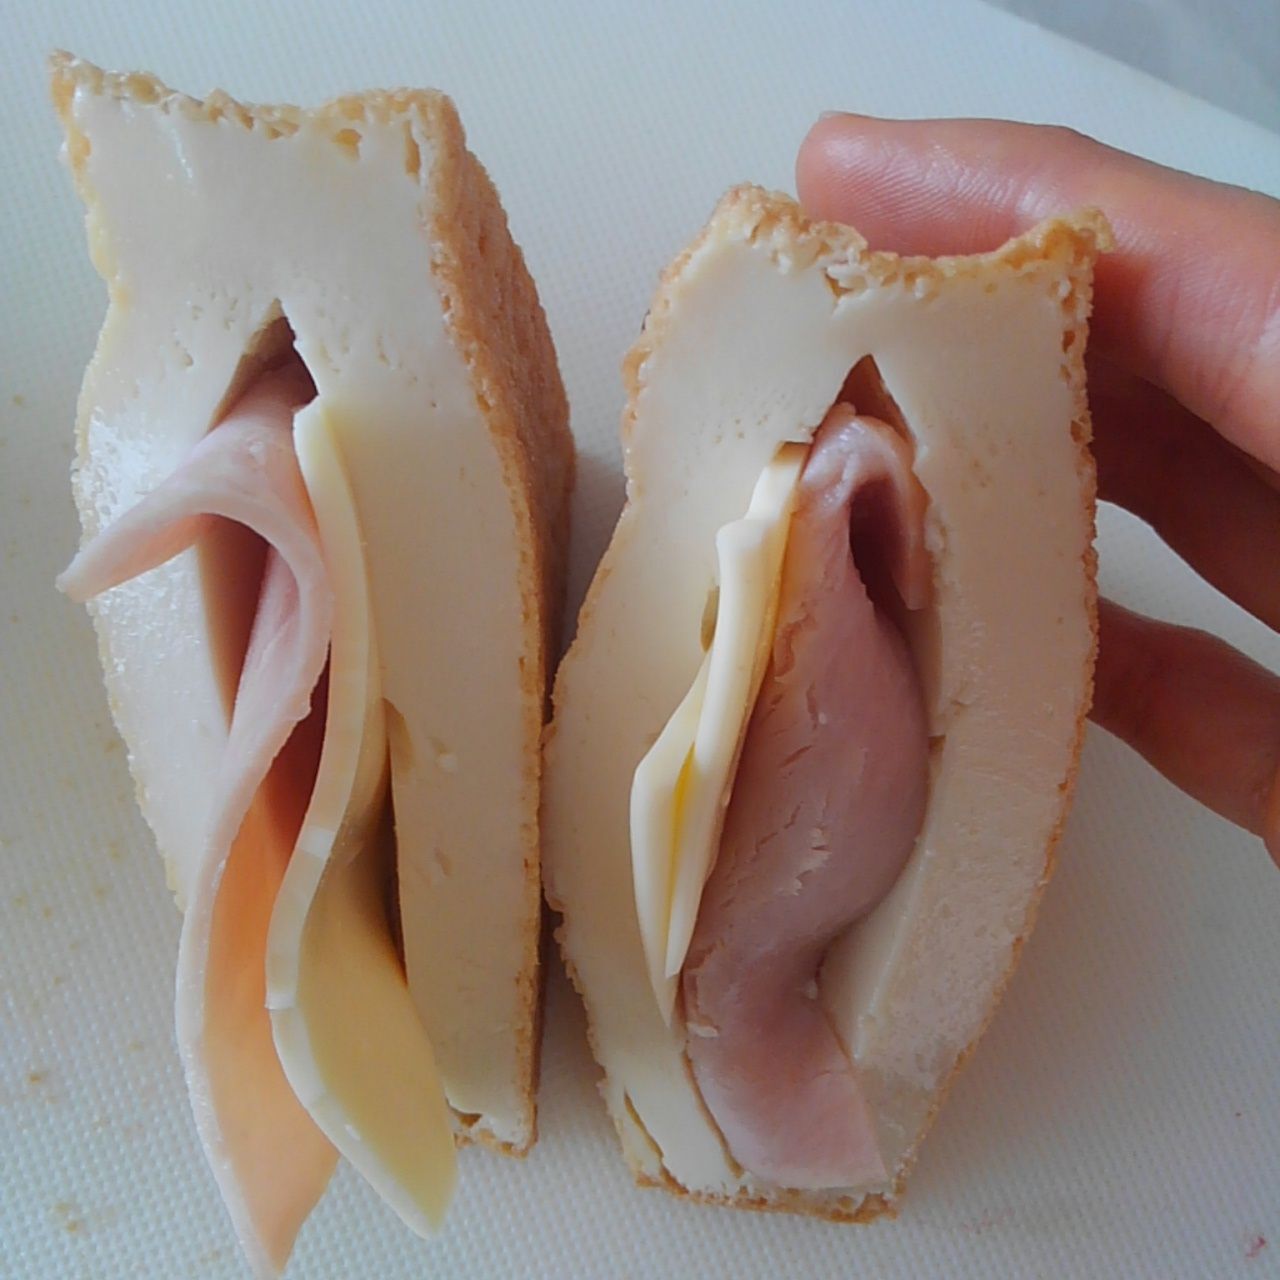 絹厚揚げを三角に切る。切り込みを入れてハムとチーズをはさむ。